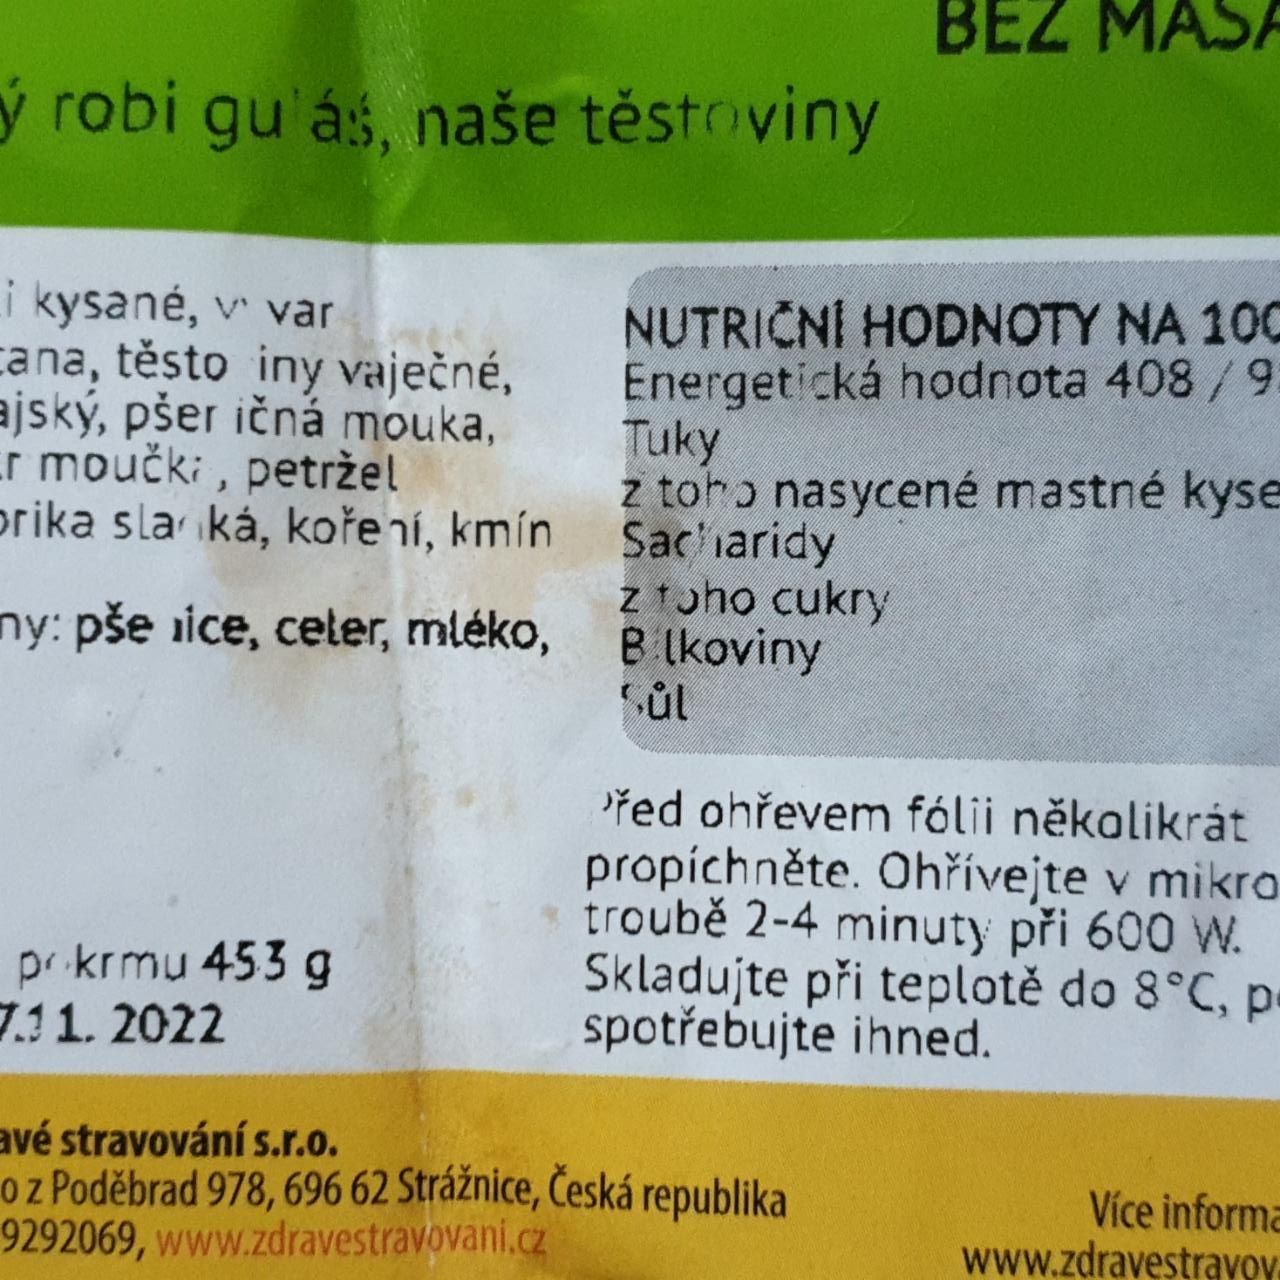 Fotografie - Segedínský robi guláš, naše těstoviny Zdravé stravování